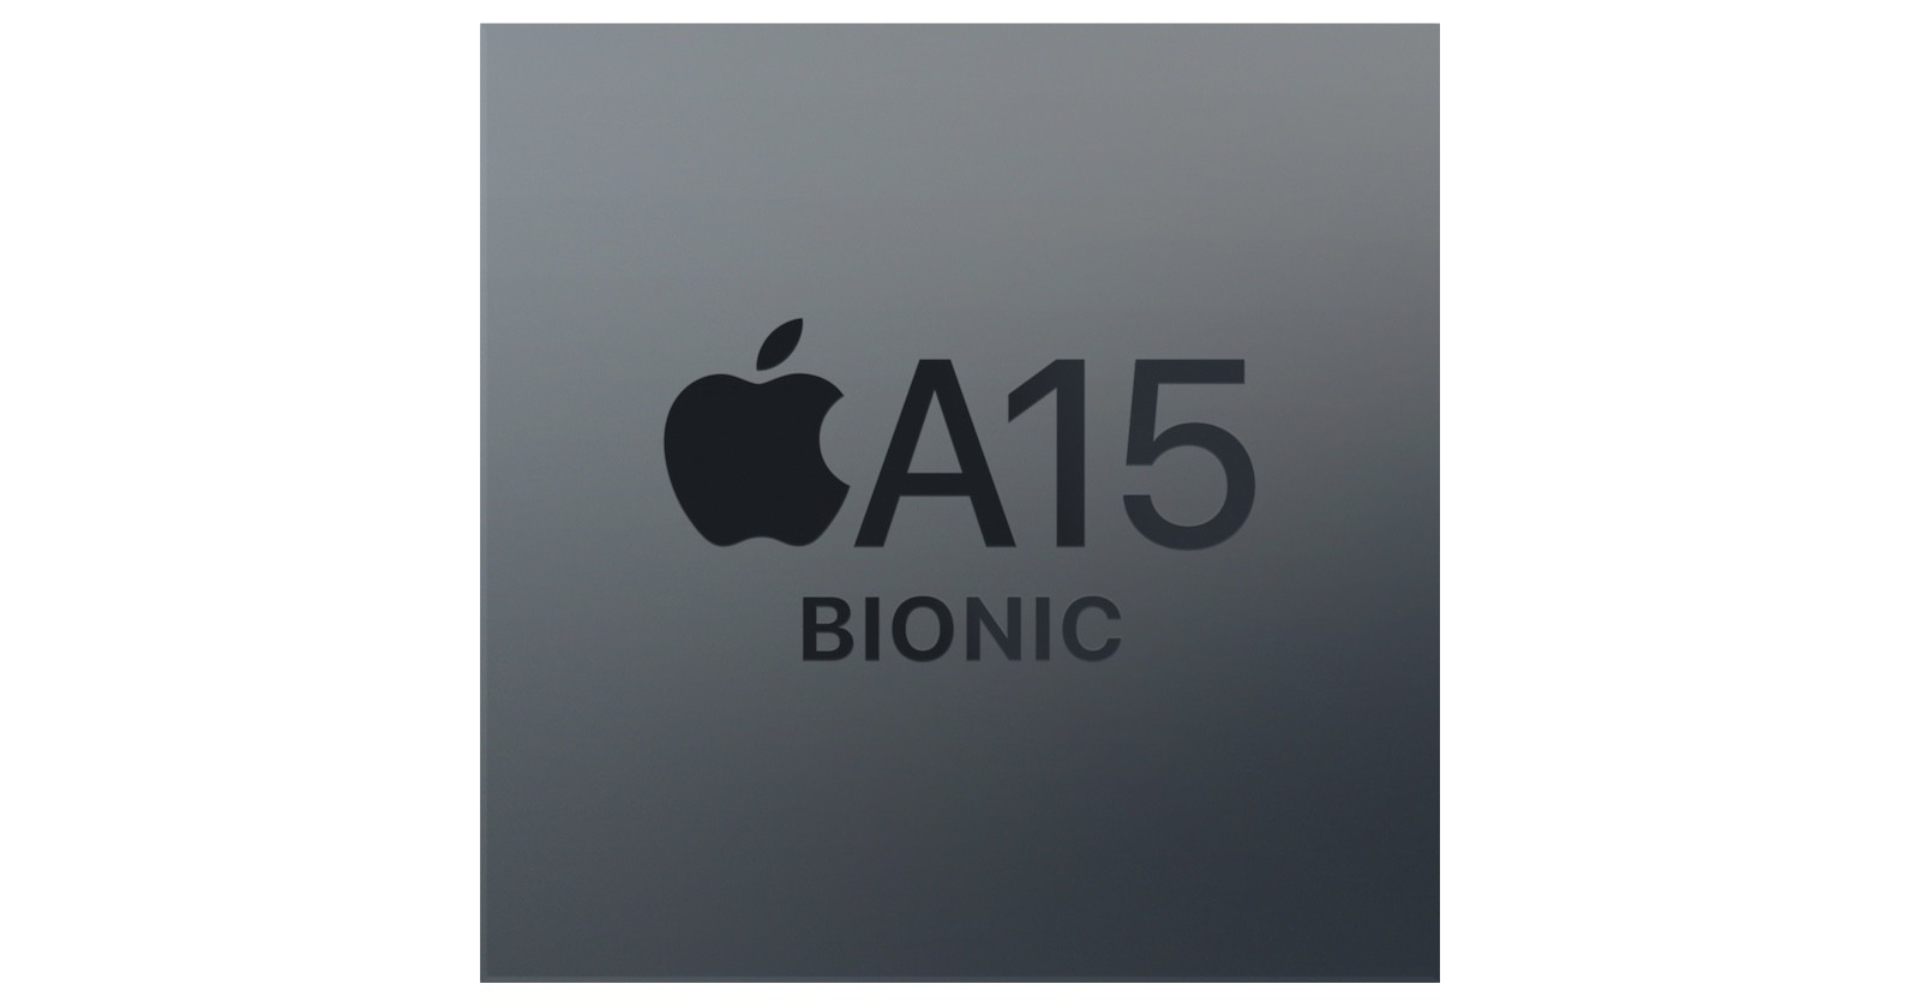 หรือข่าวลือจะเป็นจริง? พบคะแนน Apple A15 Bionic แรงขึ้นแค่นิดเดียว